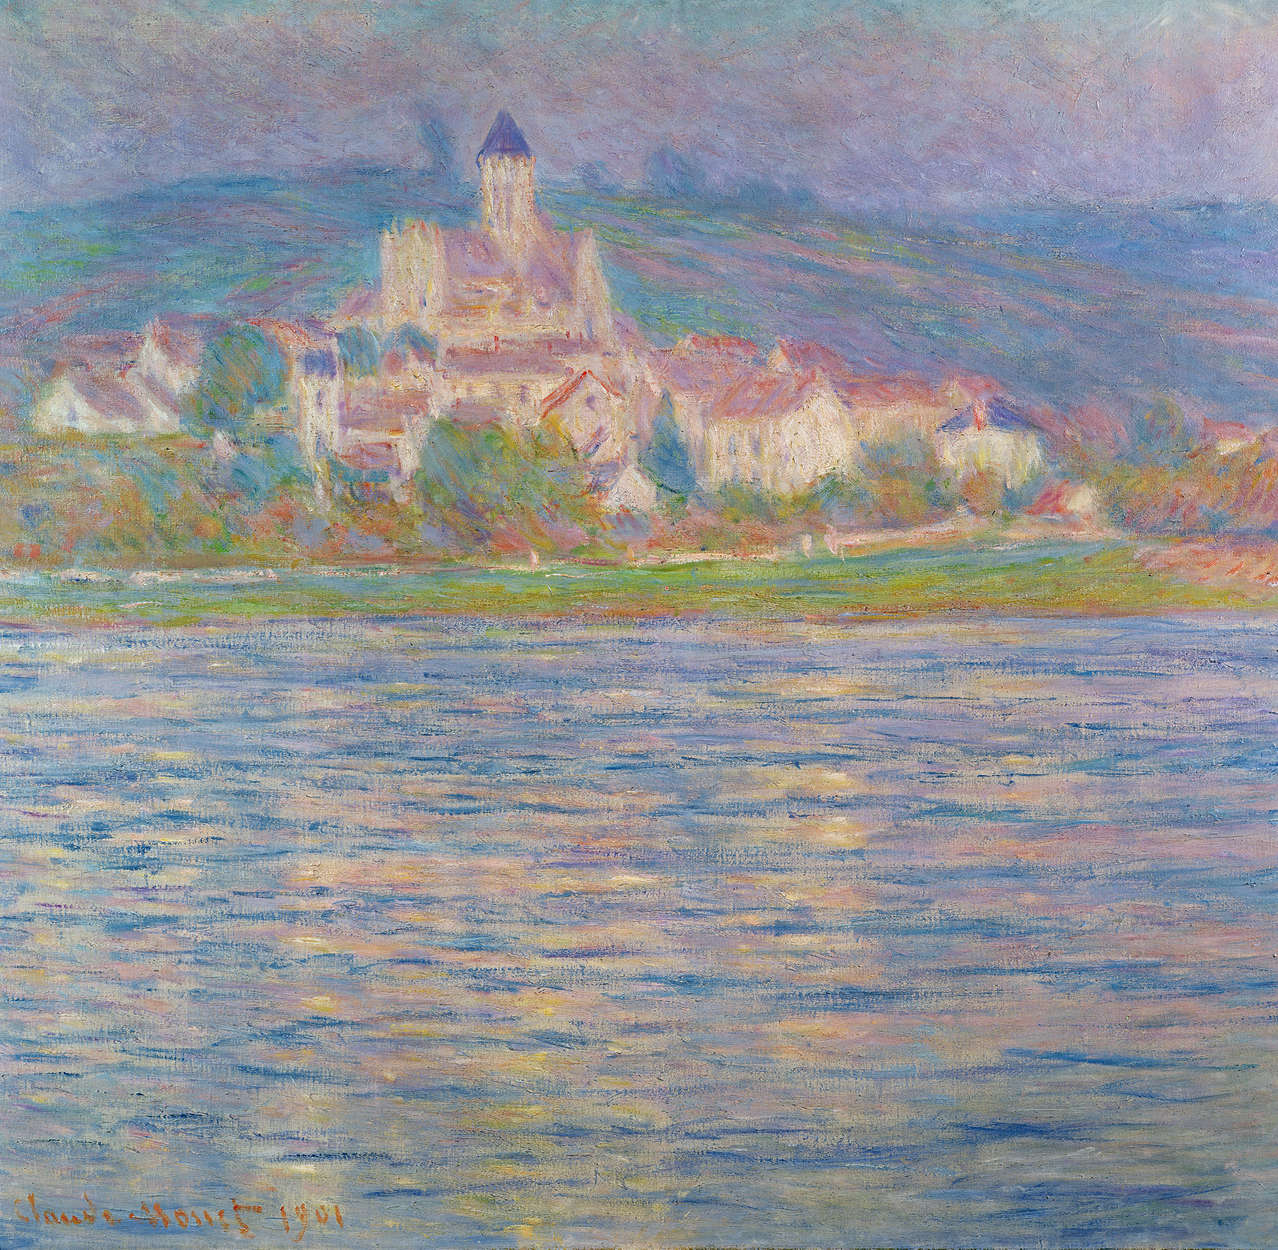             Papier peint panoramique "Vue de Vétheuil" de Claude Monet
        